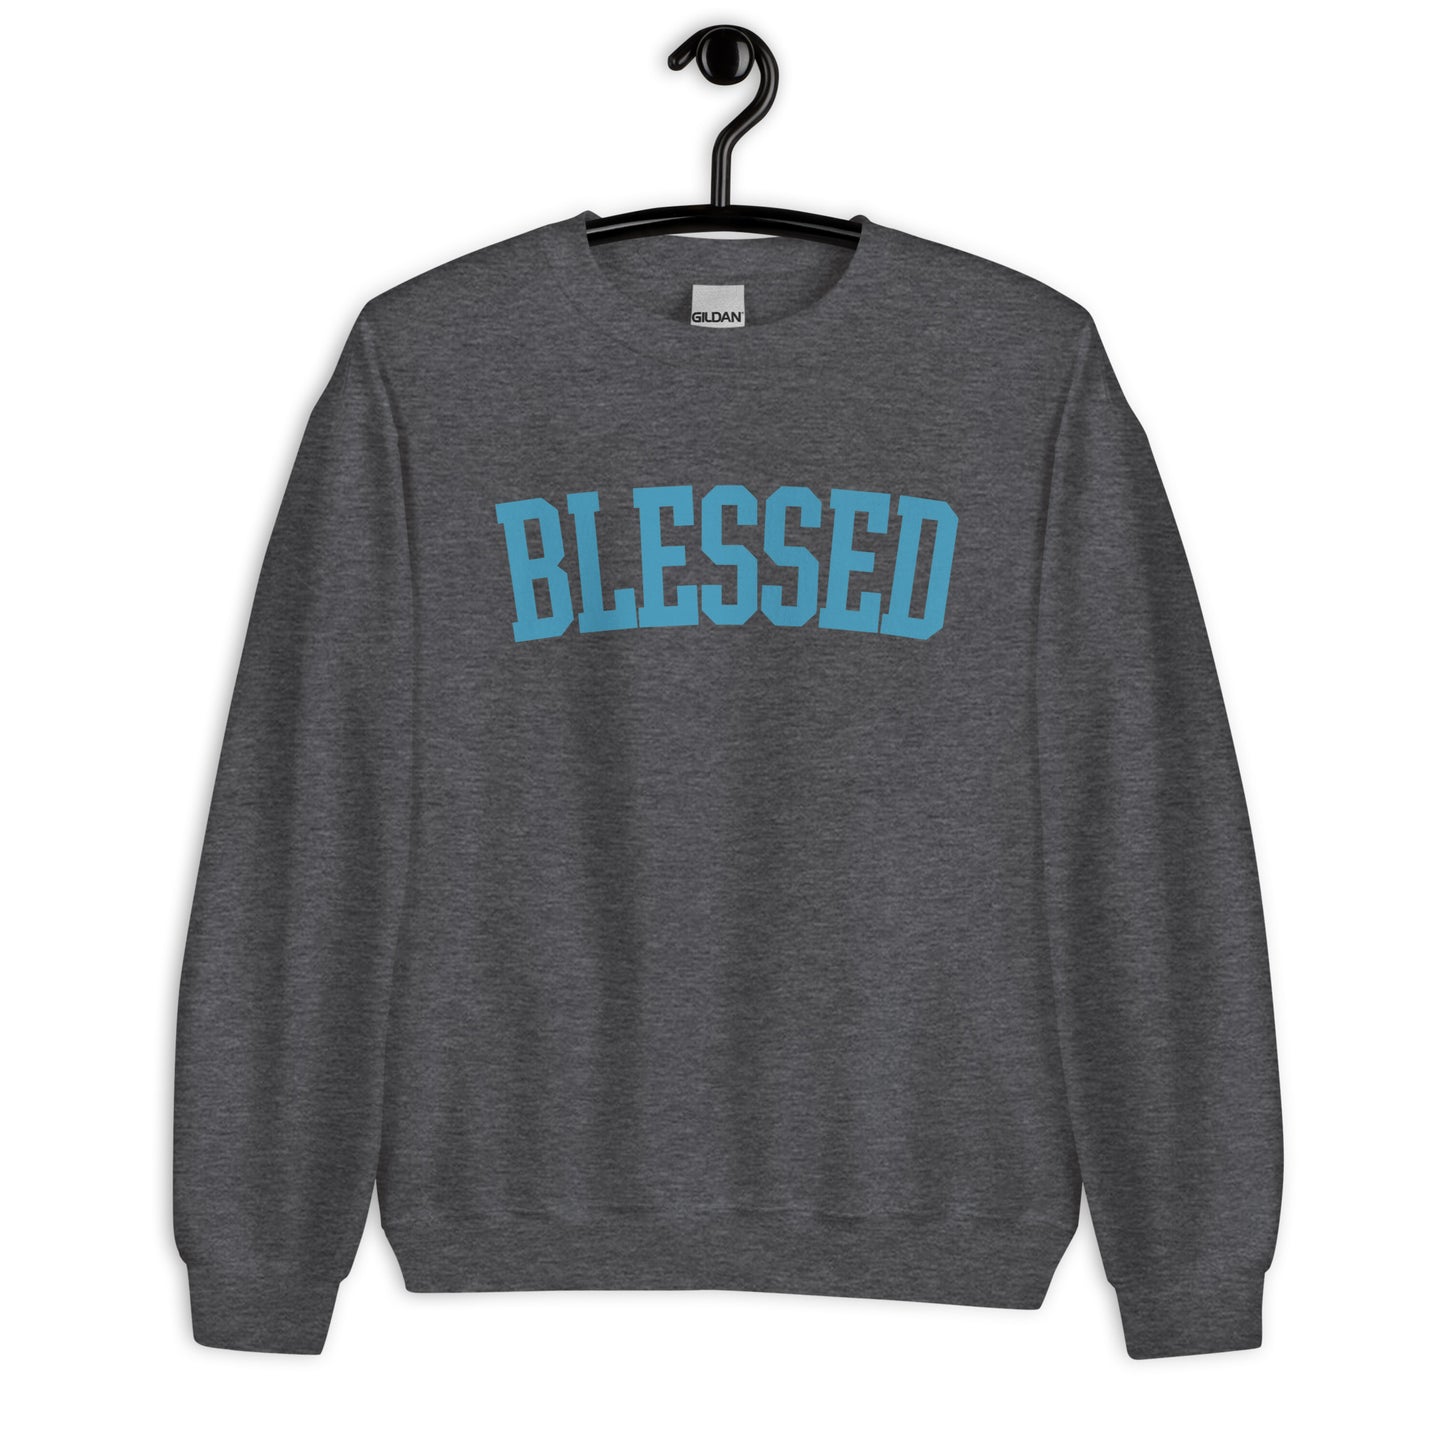 Blessed Sweatshirt | Teal